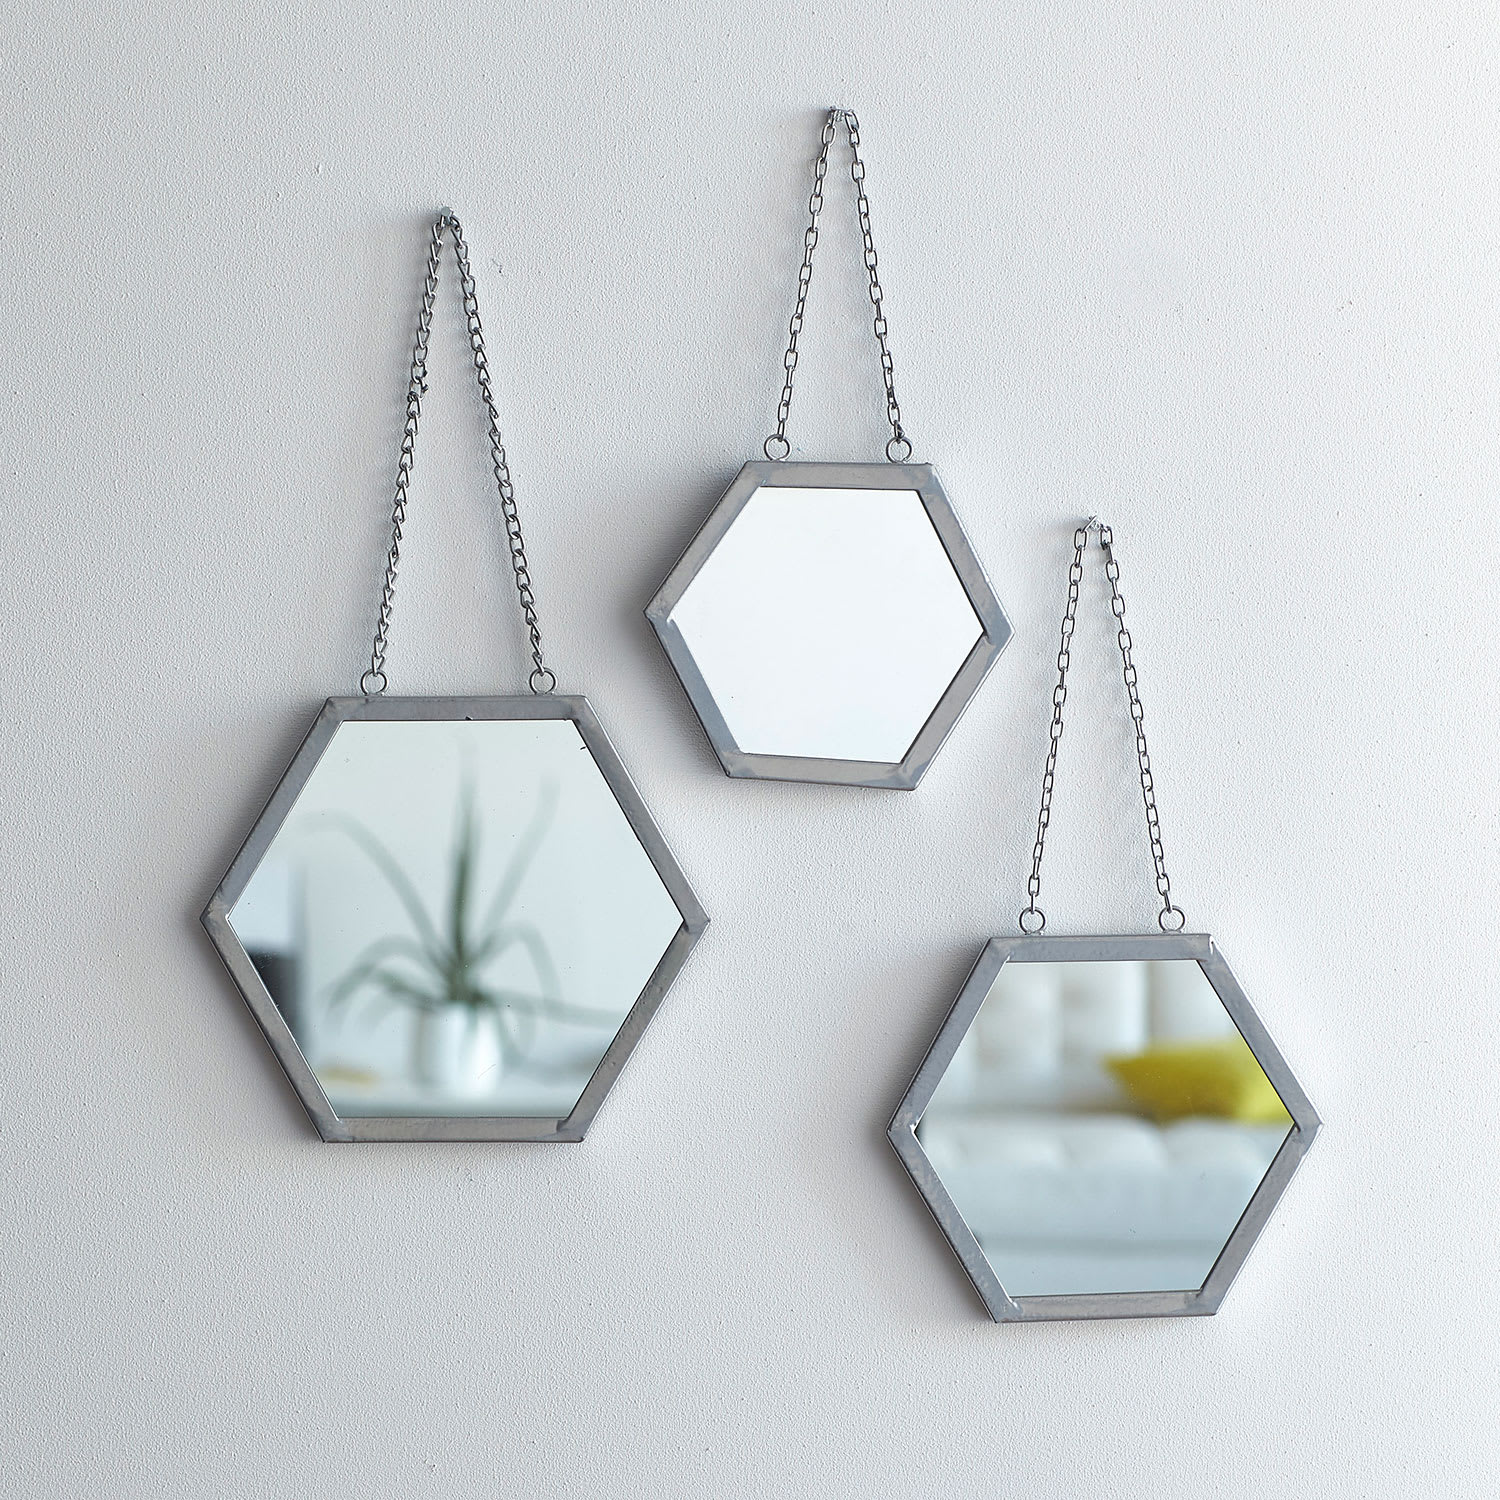 Cstudio Home Silver Hexagon Mirror, Set of 3